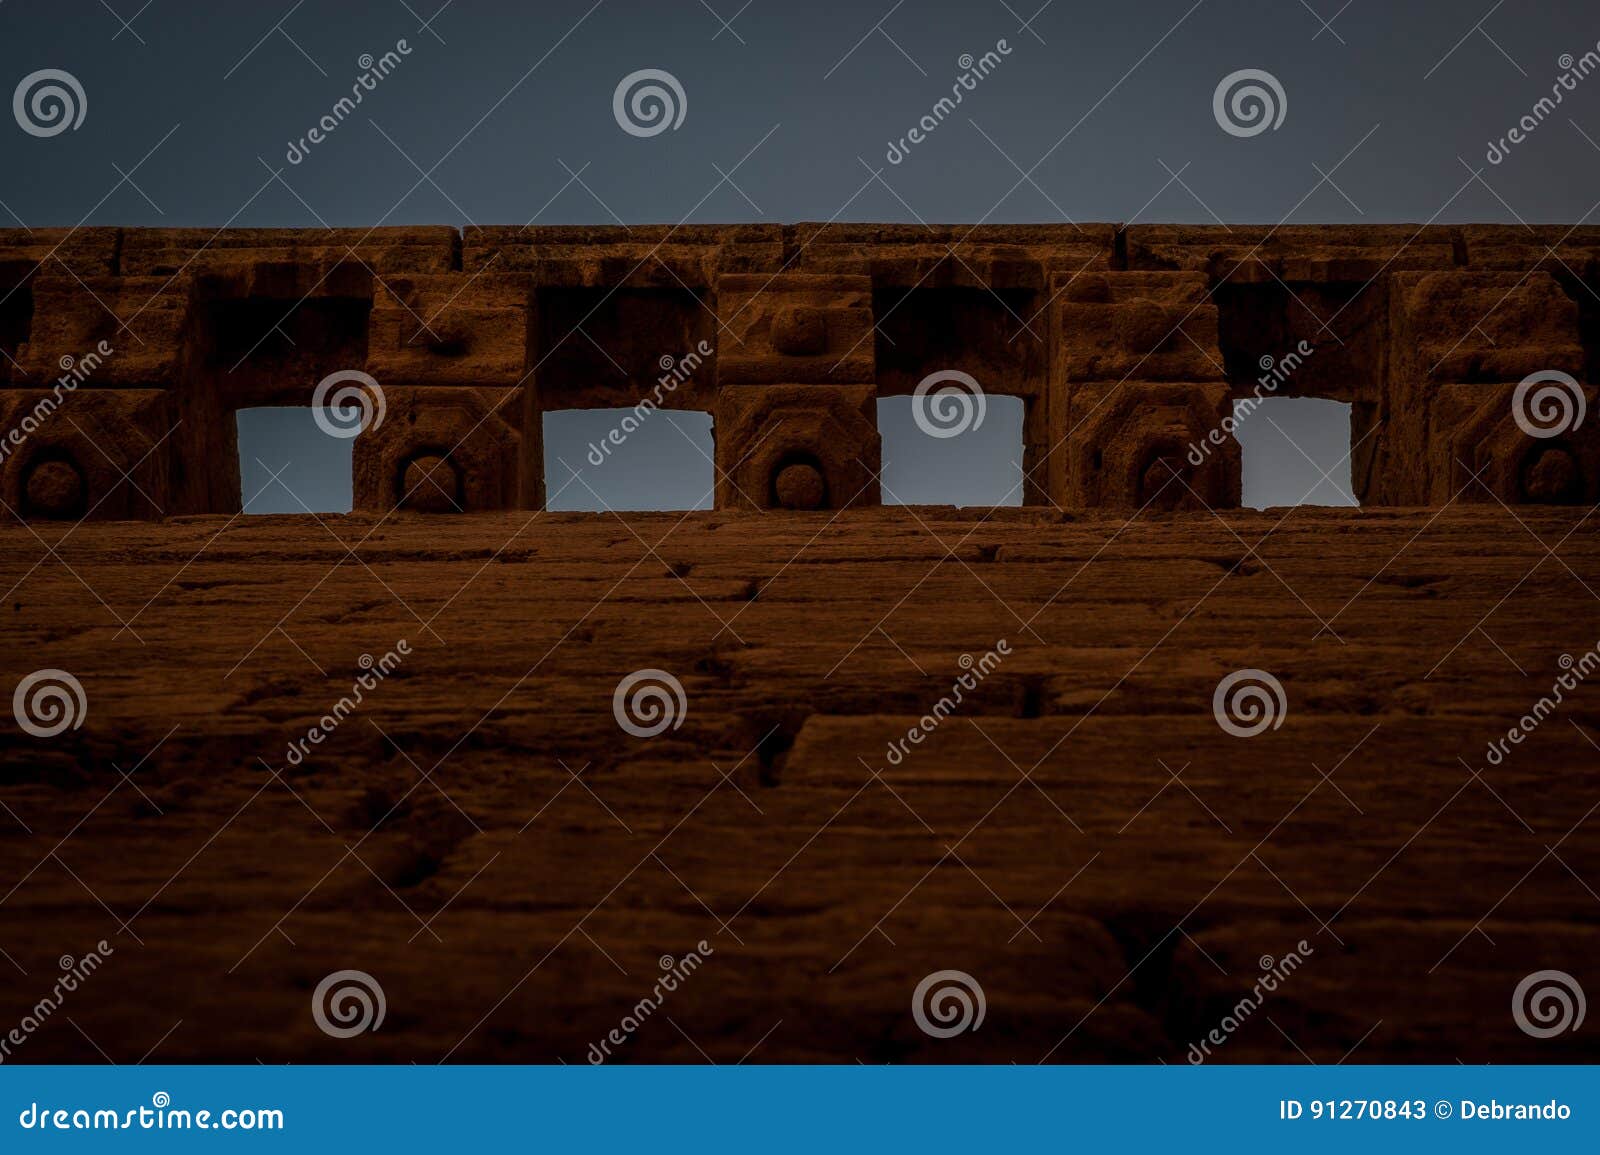 almeria castle walls